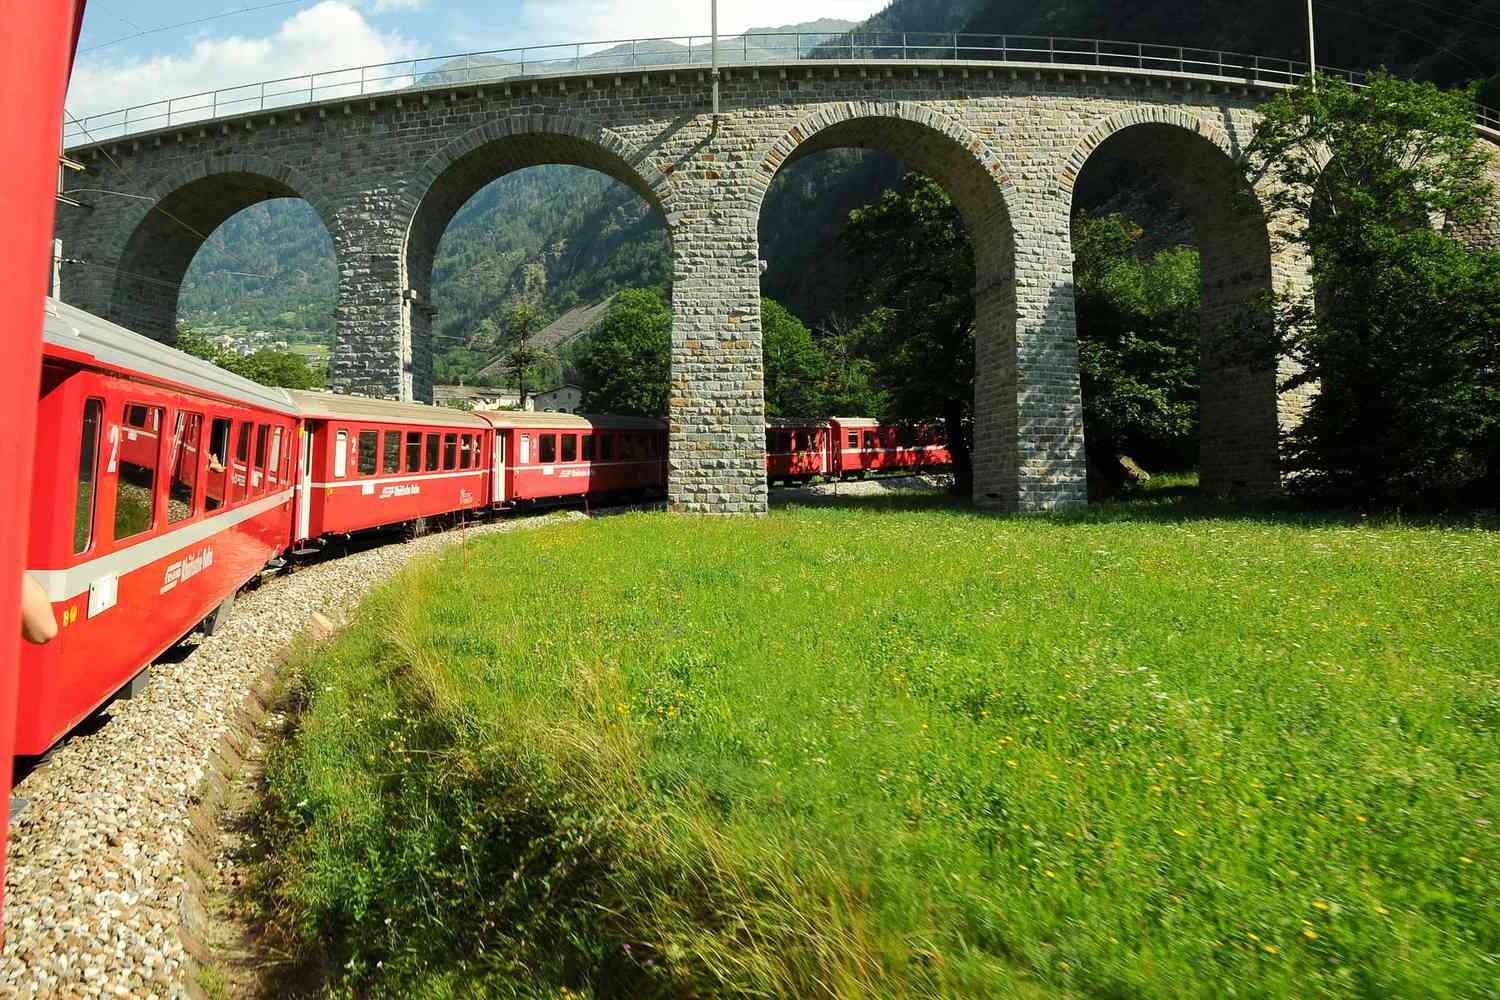 Le train rouge suisse Bernina Express passe sur le viaduc de Brusio.  Il s'agit d'un pont de pierre hélicoïdal spectaculaire qui s'intègre dans le paysage environnant et est situé sur la voie ferrée de la Bernina non loin de la gare de Brusio dans le canton des Grisons, en Italie.